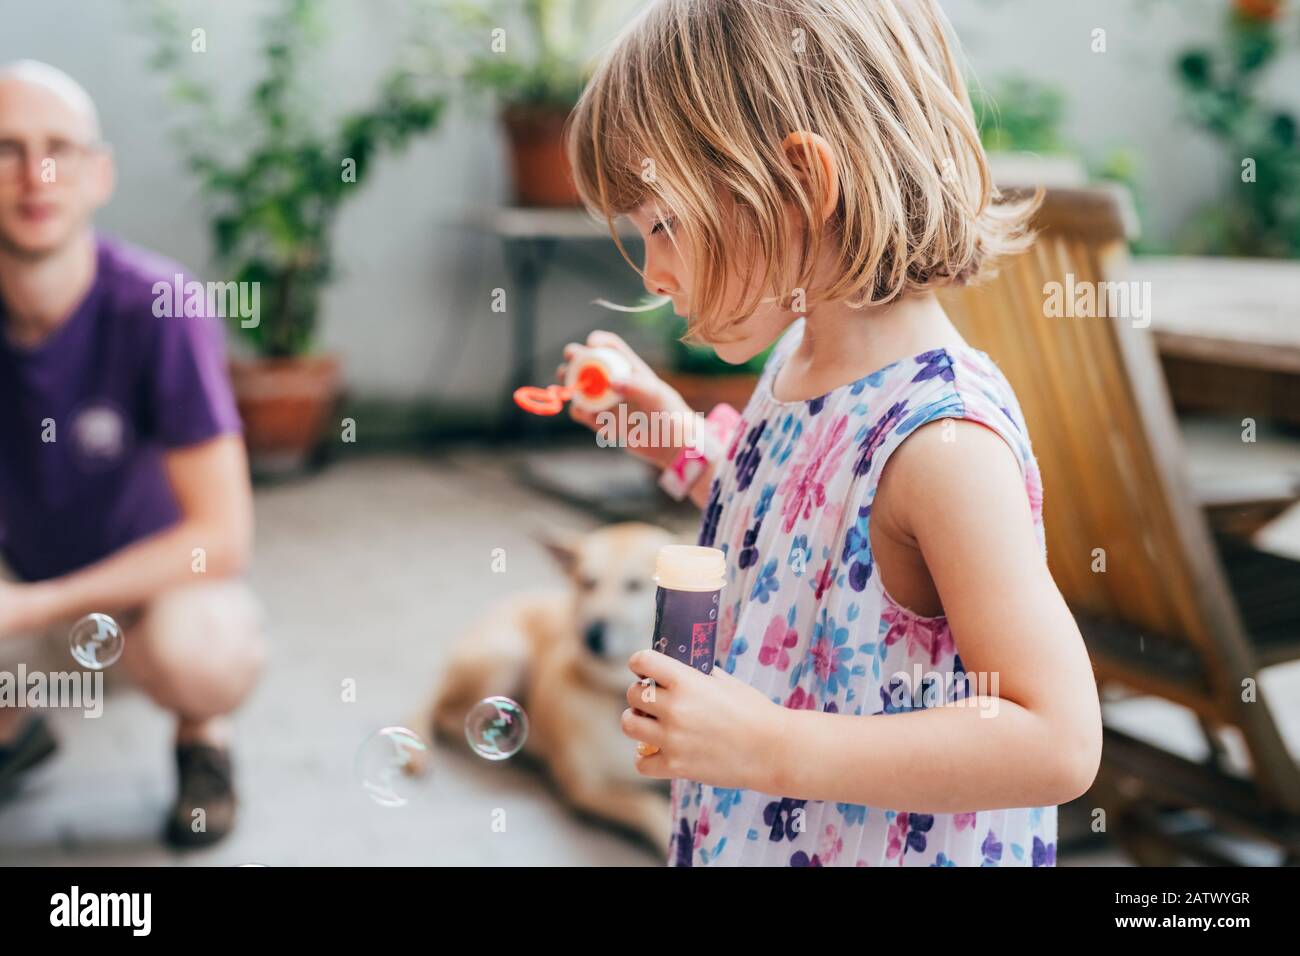 Schöne weibliche Kleinkinder, die mit Seife spielen - Unschuld, Spielzeug, Spielkonzept Stockfoto